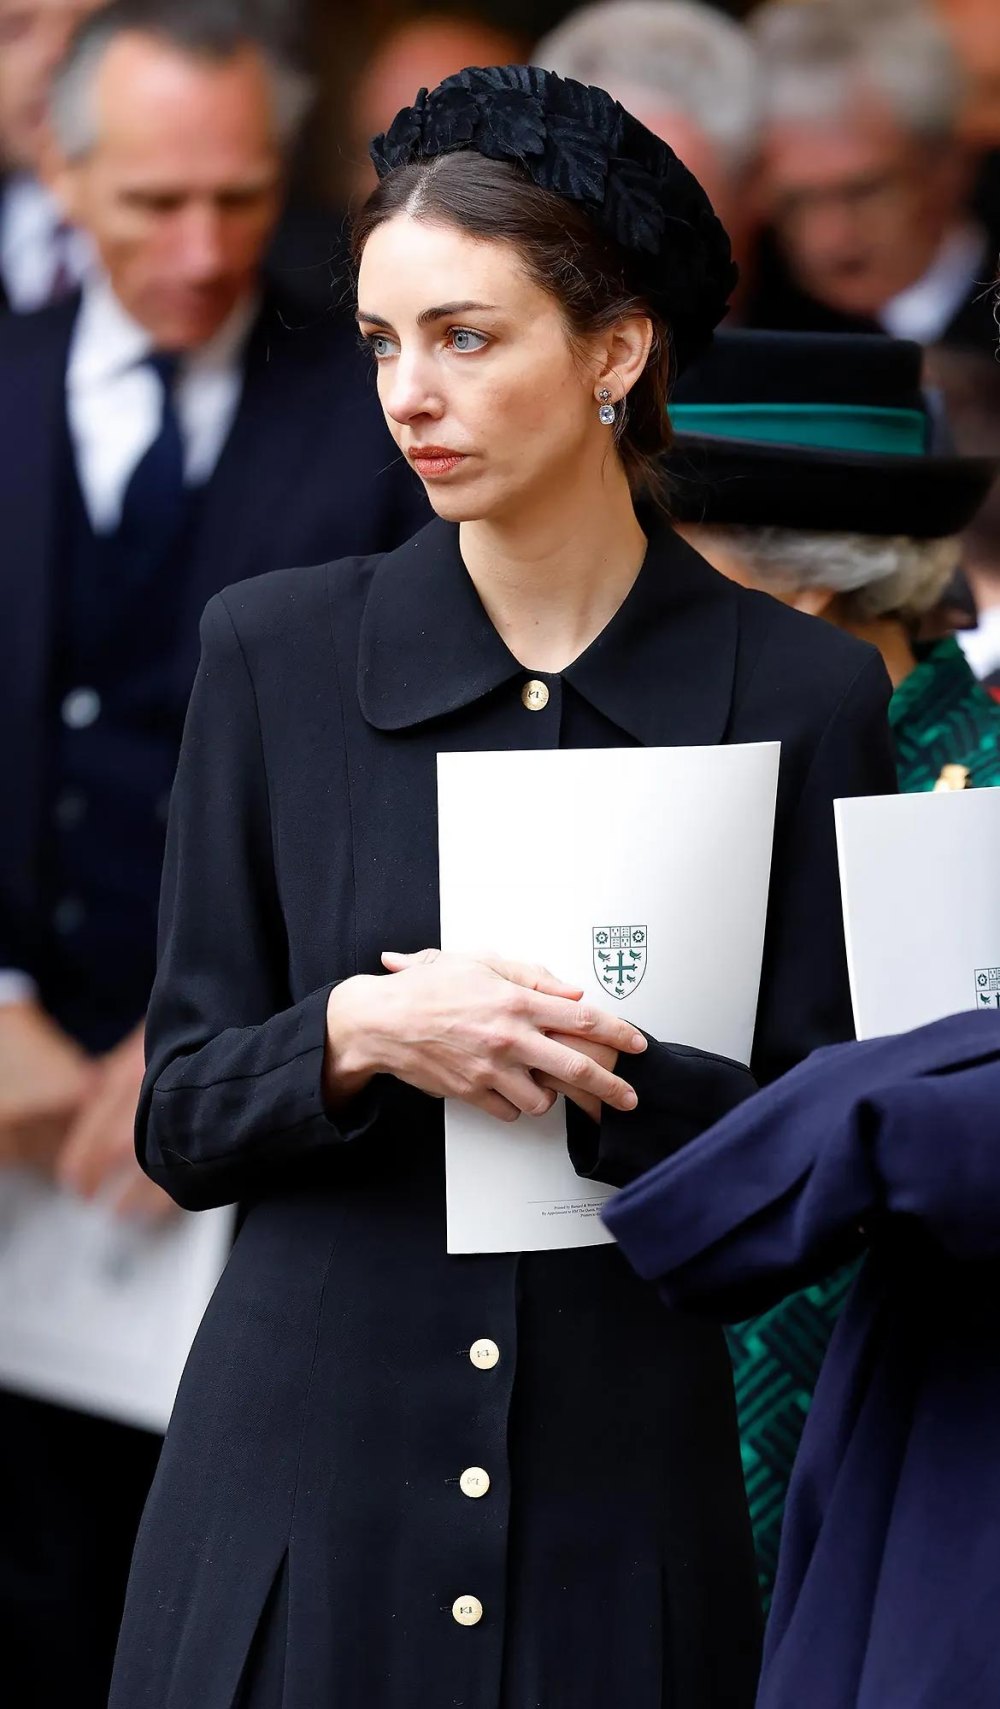 Der Deko-Skandal um Rose Hanbury wird aufgelöst, während die Gerüchte über Prinz William weiter kursieren